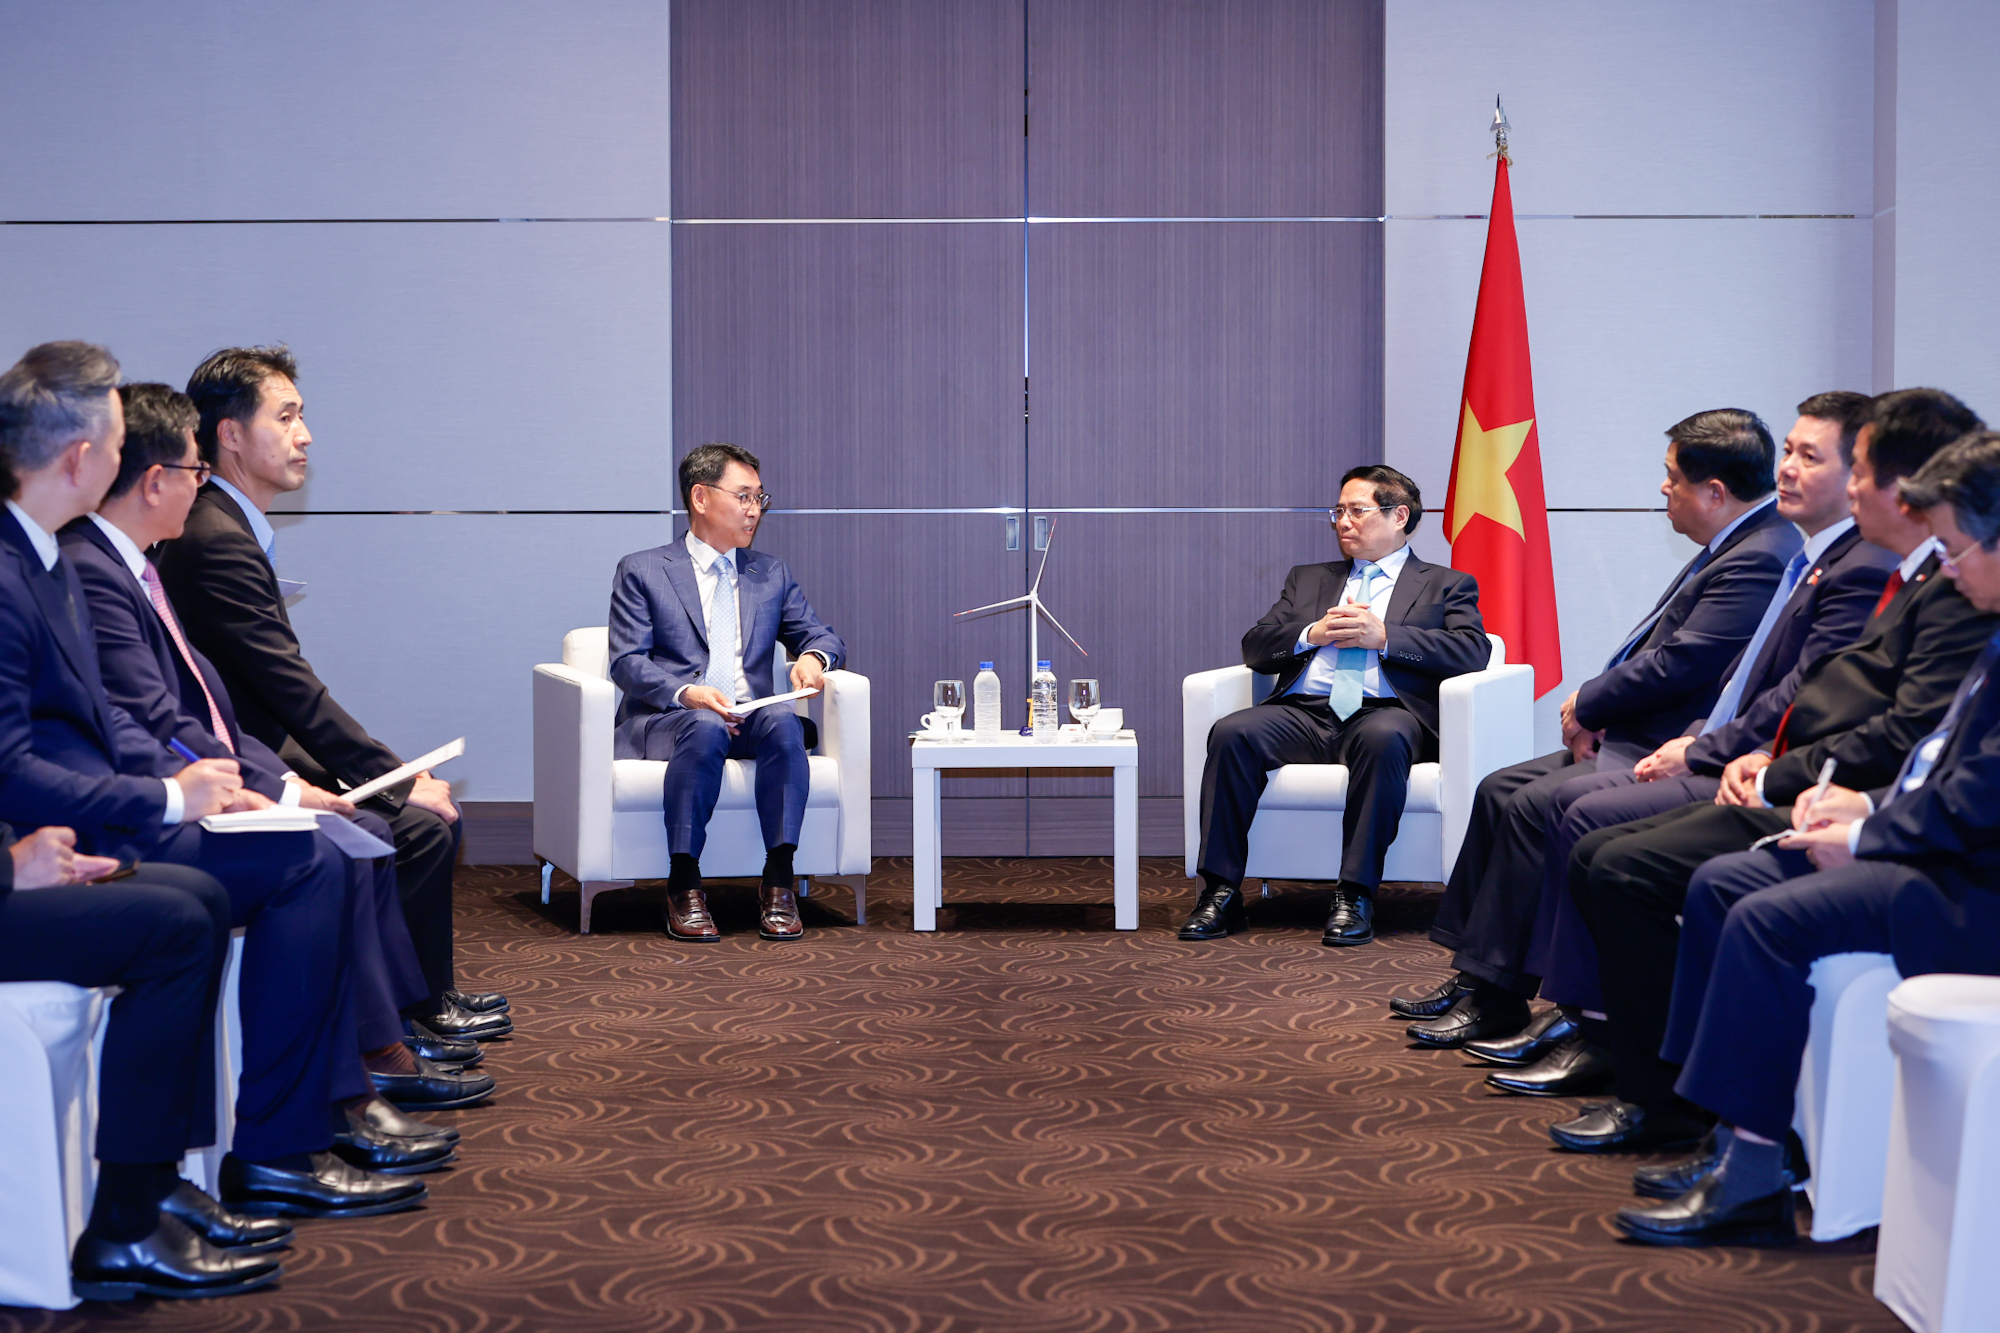 Thủ tướng đánh giá cao những đóng góp thiết thực, hiệu quả của Doosan Enerbility tại Việt Nam thời gian qua về sản xuất các thiết bị công nghiệp và thiết bị năng lượng - Ảnh: VGP/Nhật Bắc